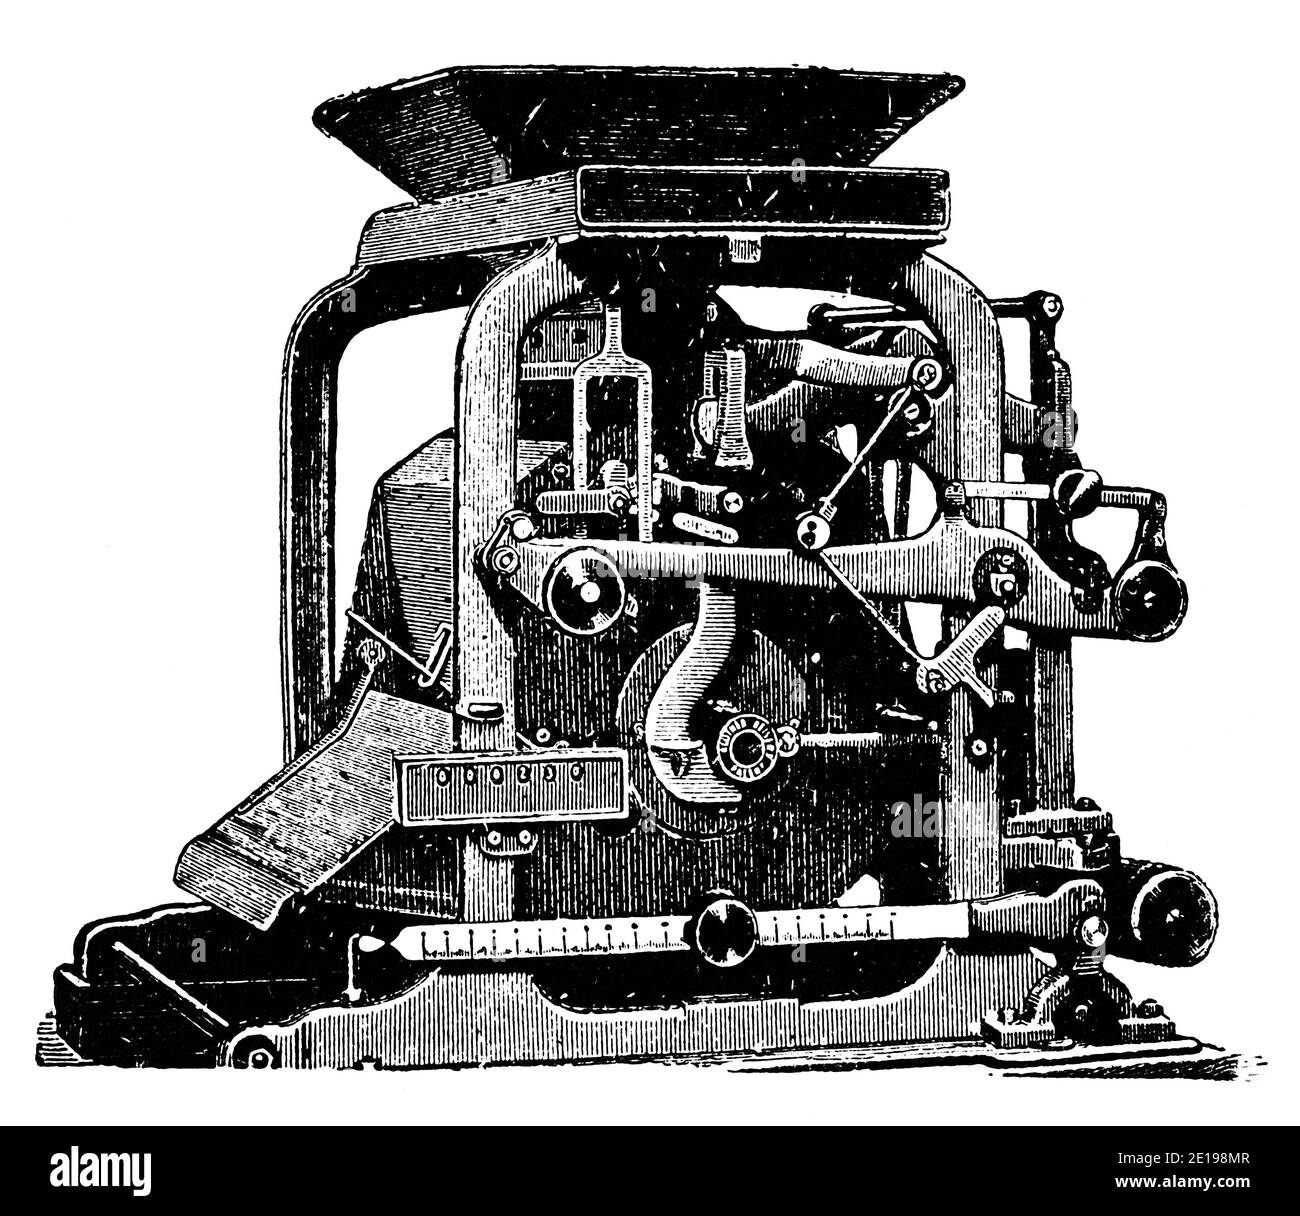 Macchina per la pulizia di granelli industriali con dispositivo per la misurazione dei parametri del prodotto finito. Illustrazione del 19 ° secolo. Germania. Sfondo bianco. Foto Stock